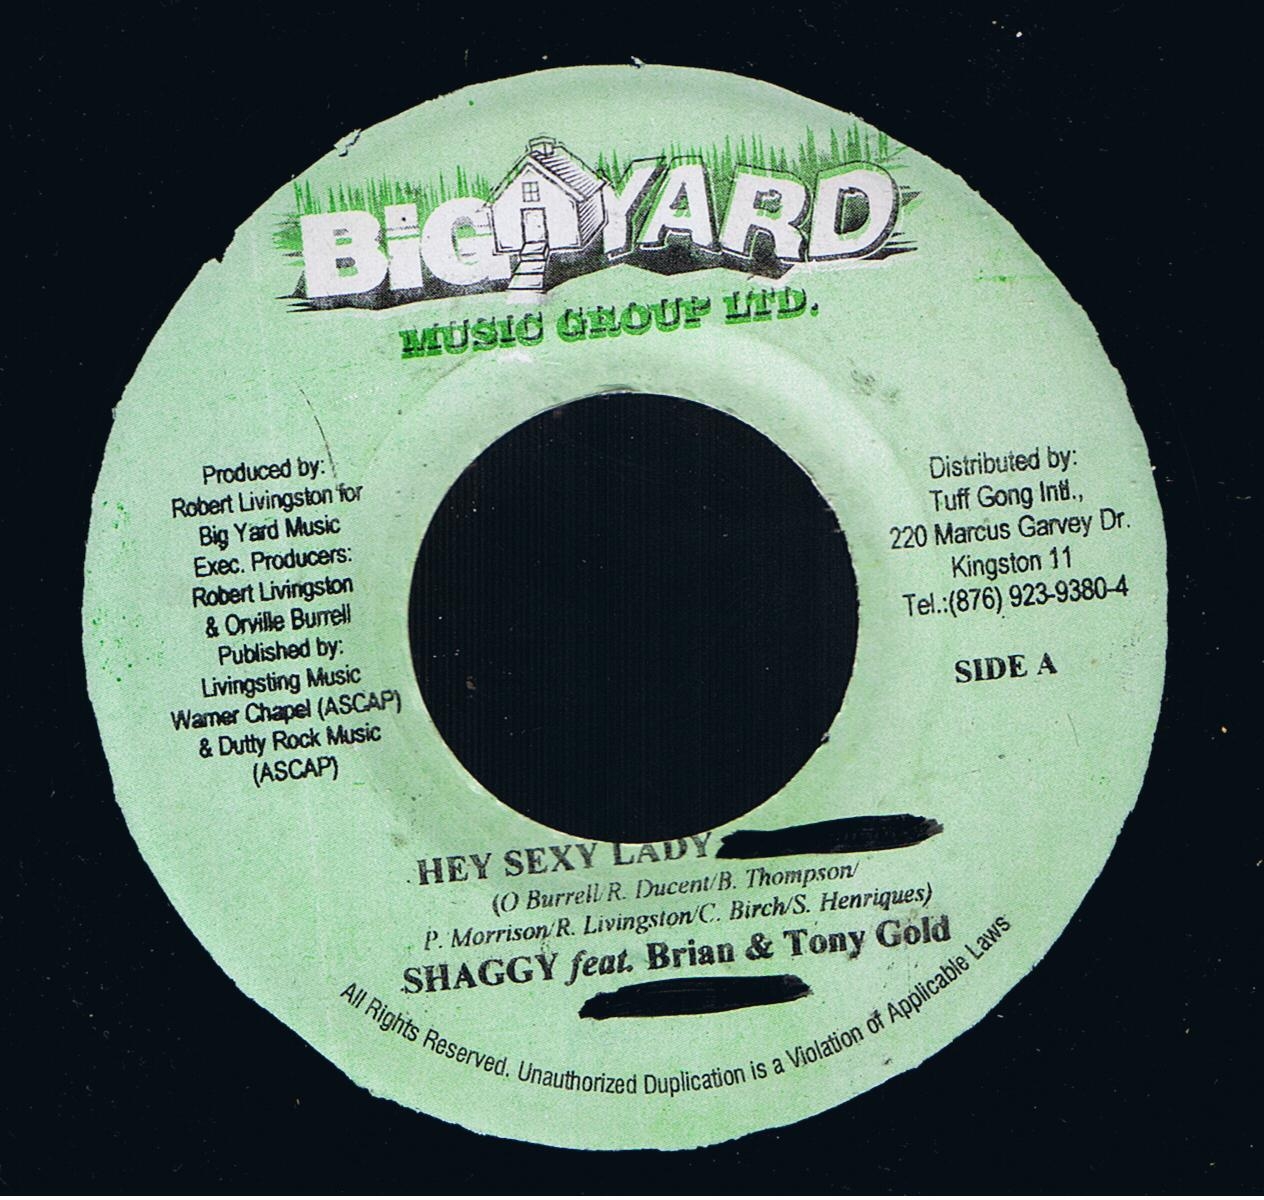 Shaggy feat. Brian & Tony Gold - Hey Sexy Lady / Version (7") 